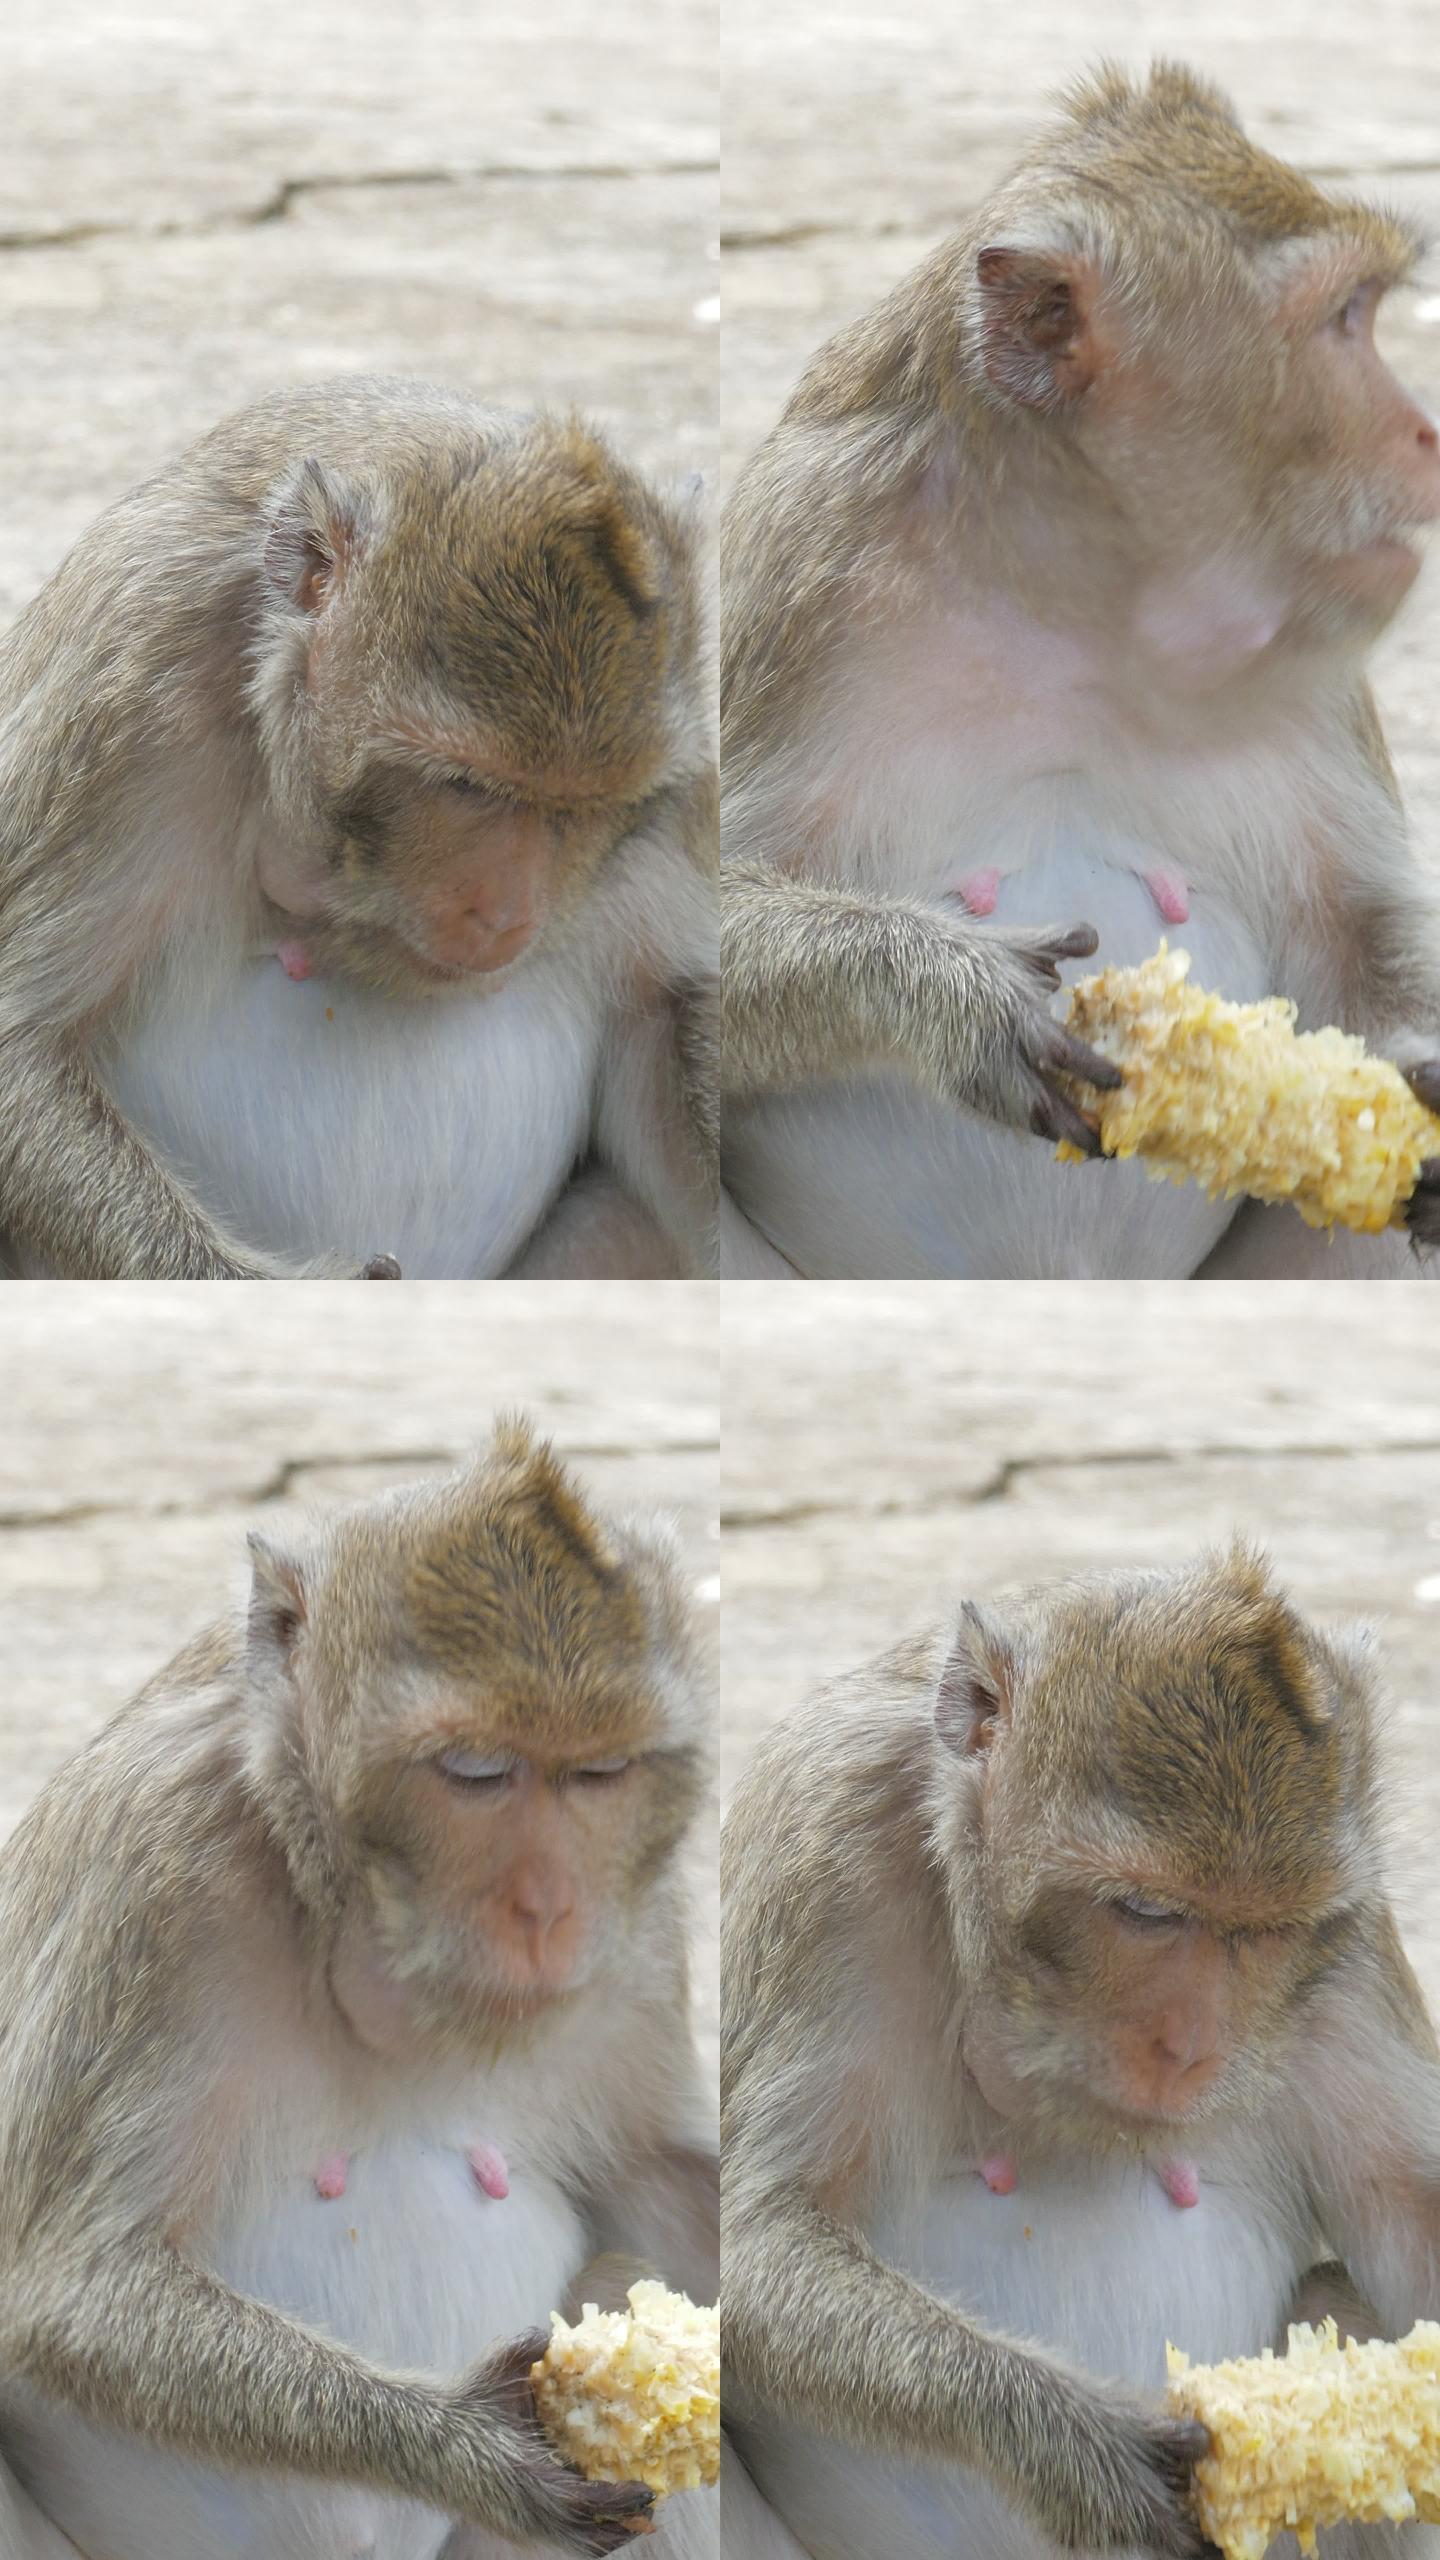 猴子吃玉米。啃食